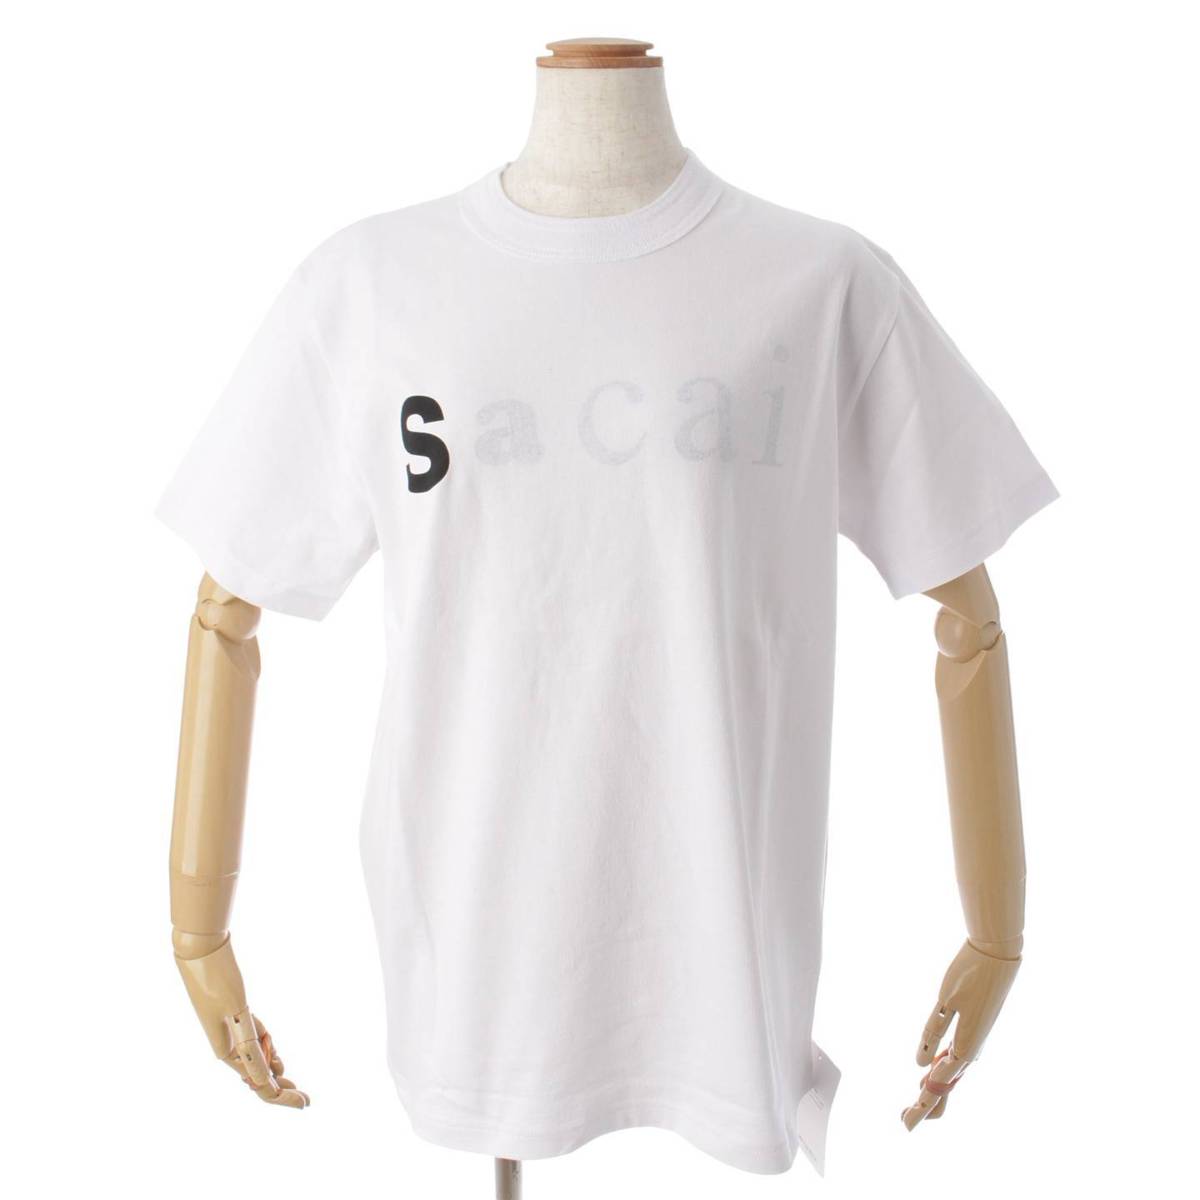 サカイ(sacai) 22SS sacai s logo tee ロゴ Tシャツ トップス 22-0353 ホワイト 中古 通販 retro レトロ